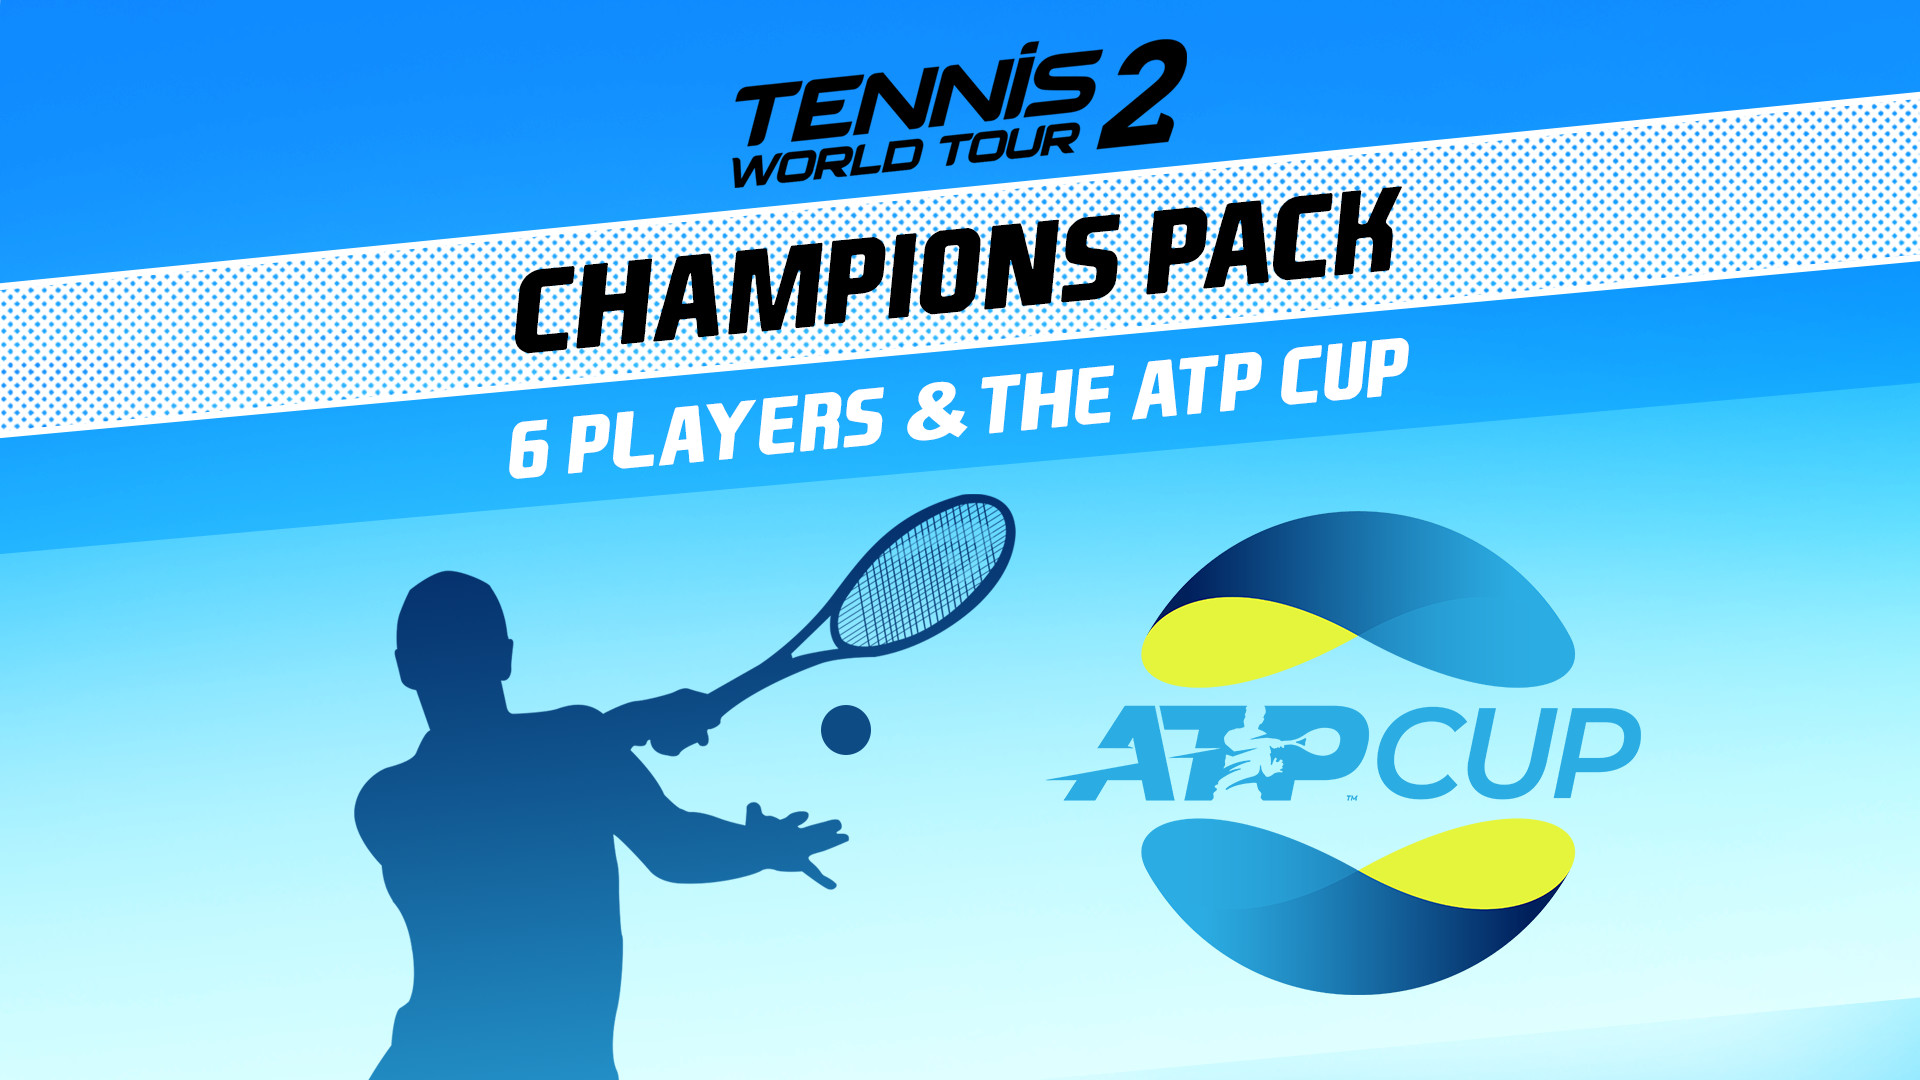 Tennis World Tour 2 - Champions Pack Featured Screenshot #1